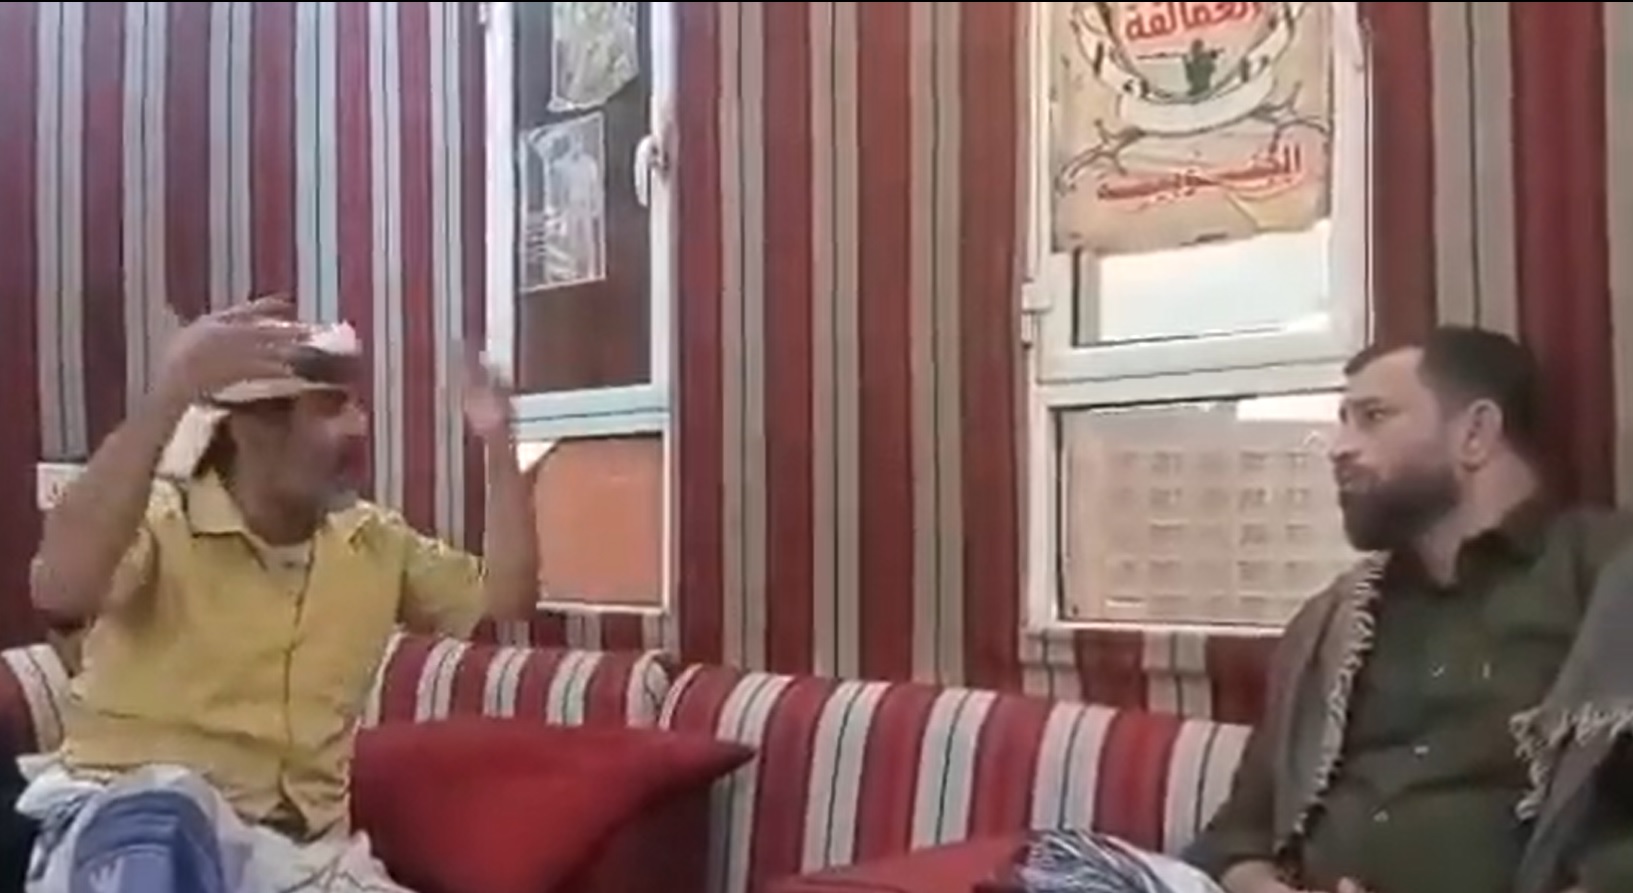 شيخ قبلي من البيضاء يبكي بألم وحرقة بعد اقتحام منزله في عدن: اعتقلوا زوجتي وأناشد كل من فيه نخوة انصافي - (فيديو)